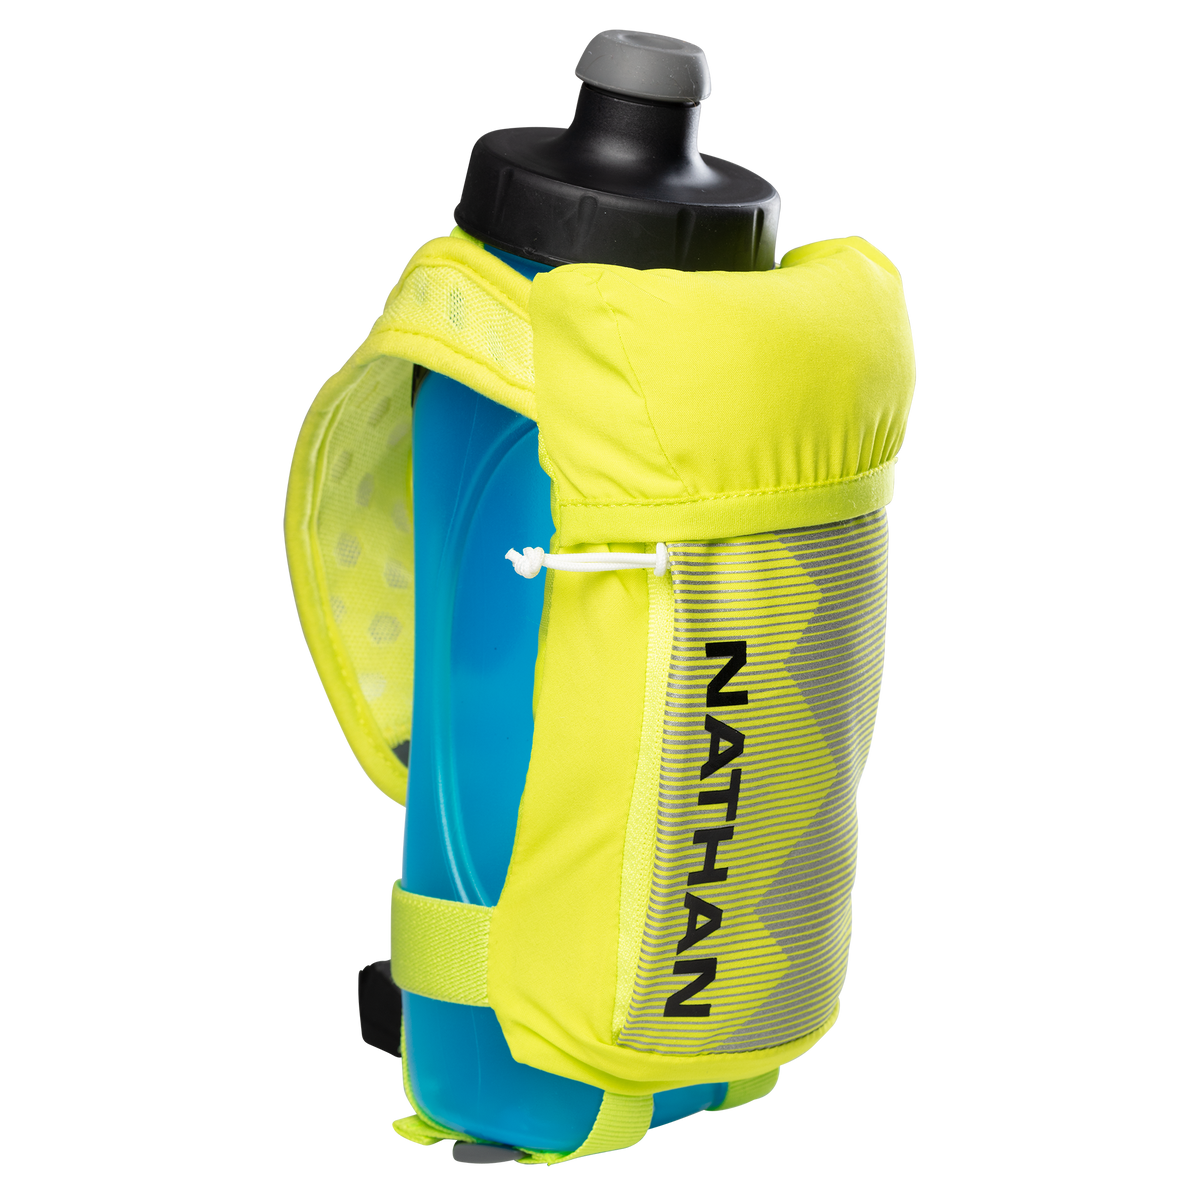 Nathan SpeedDraw Plus Water Bottle